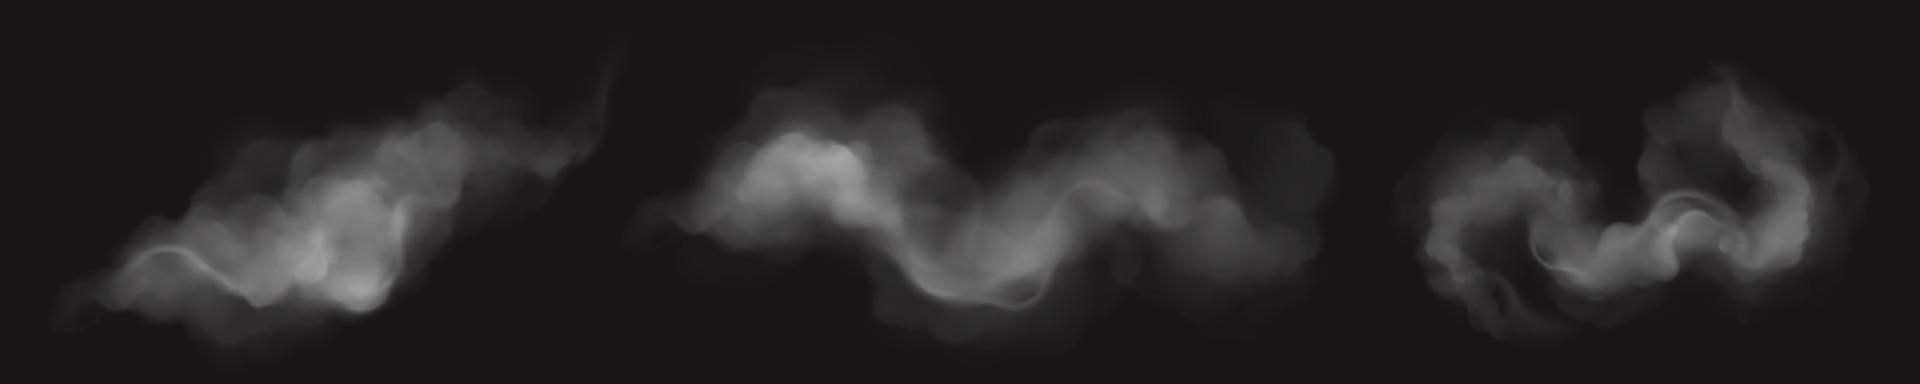 realistische rauchwolken, weißes zigarettendampfset vektor